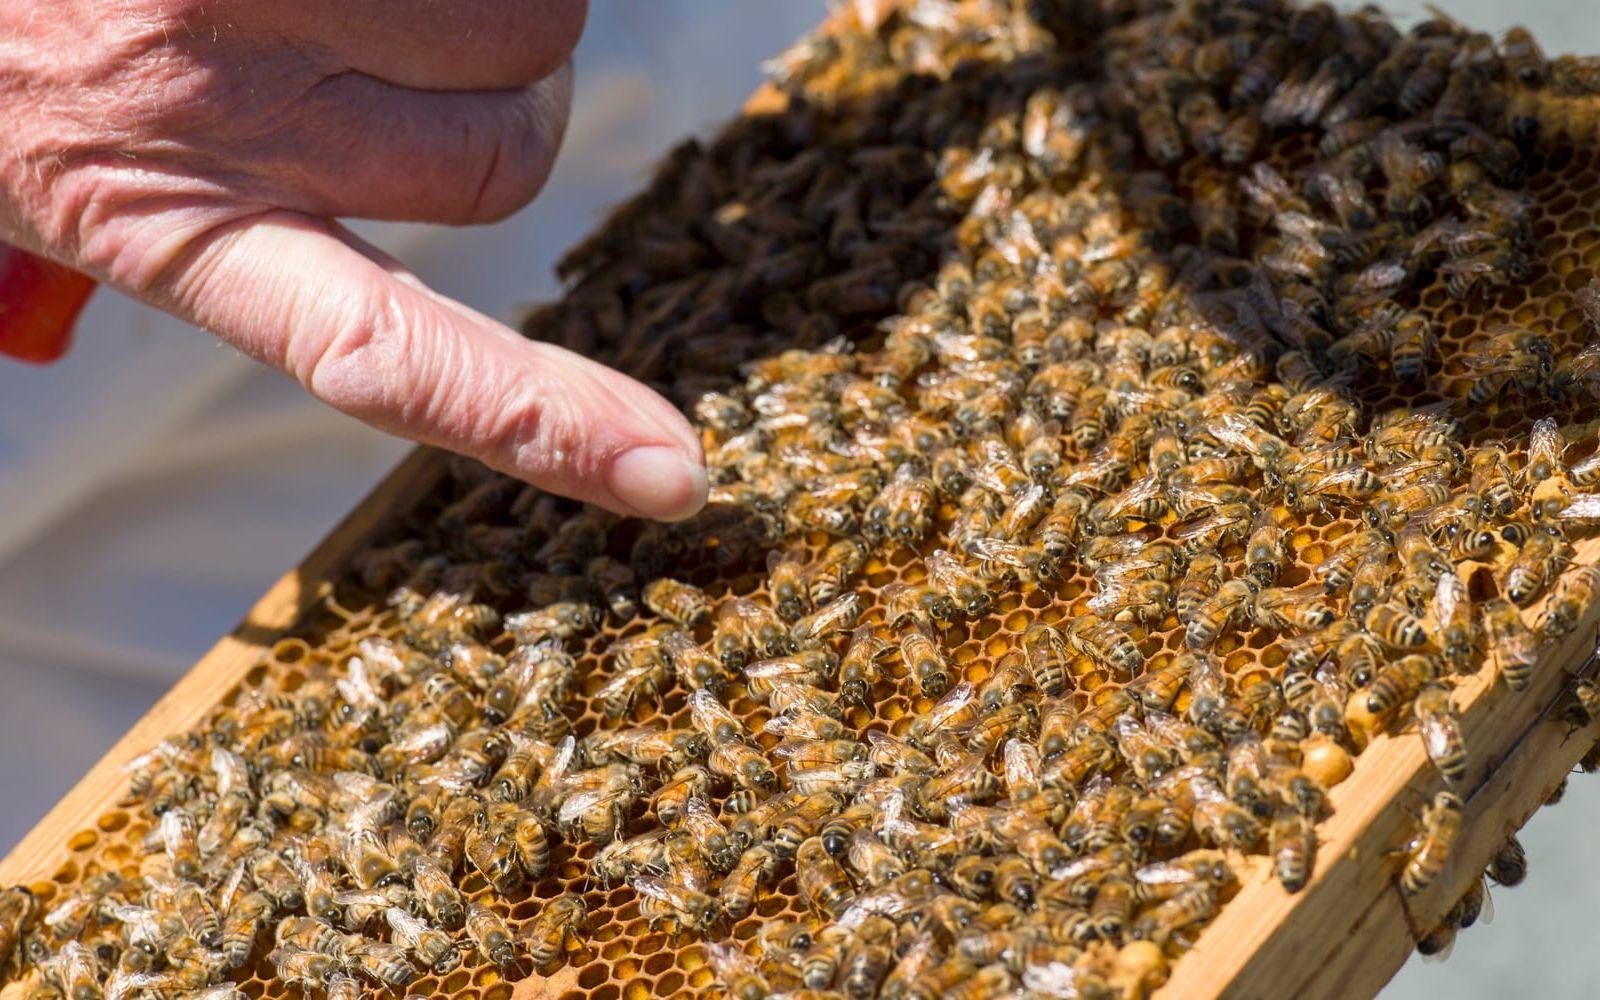 Vågat. De unga bina är ludna, och tycks inte ha något emot att bli klappade på. Foto: Lasse Edwartz